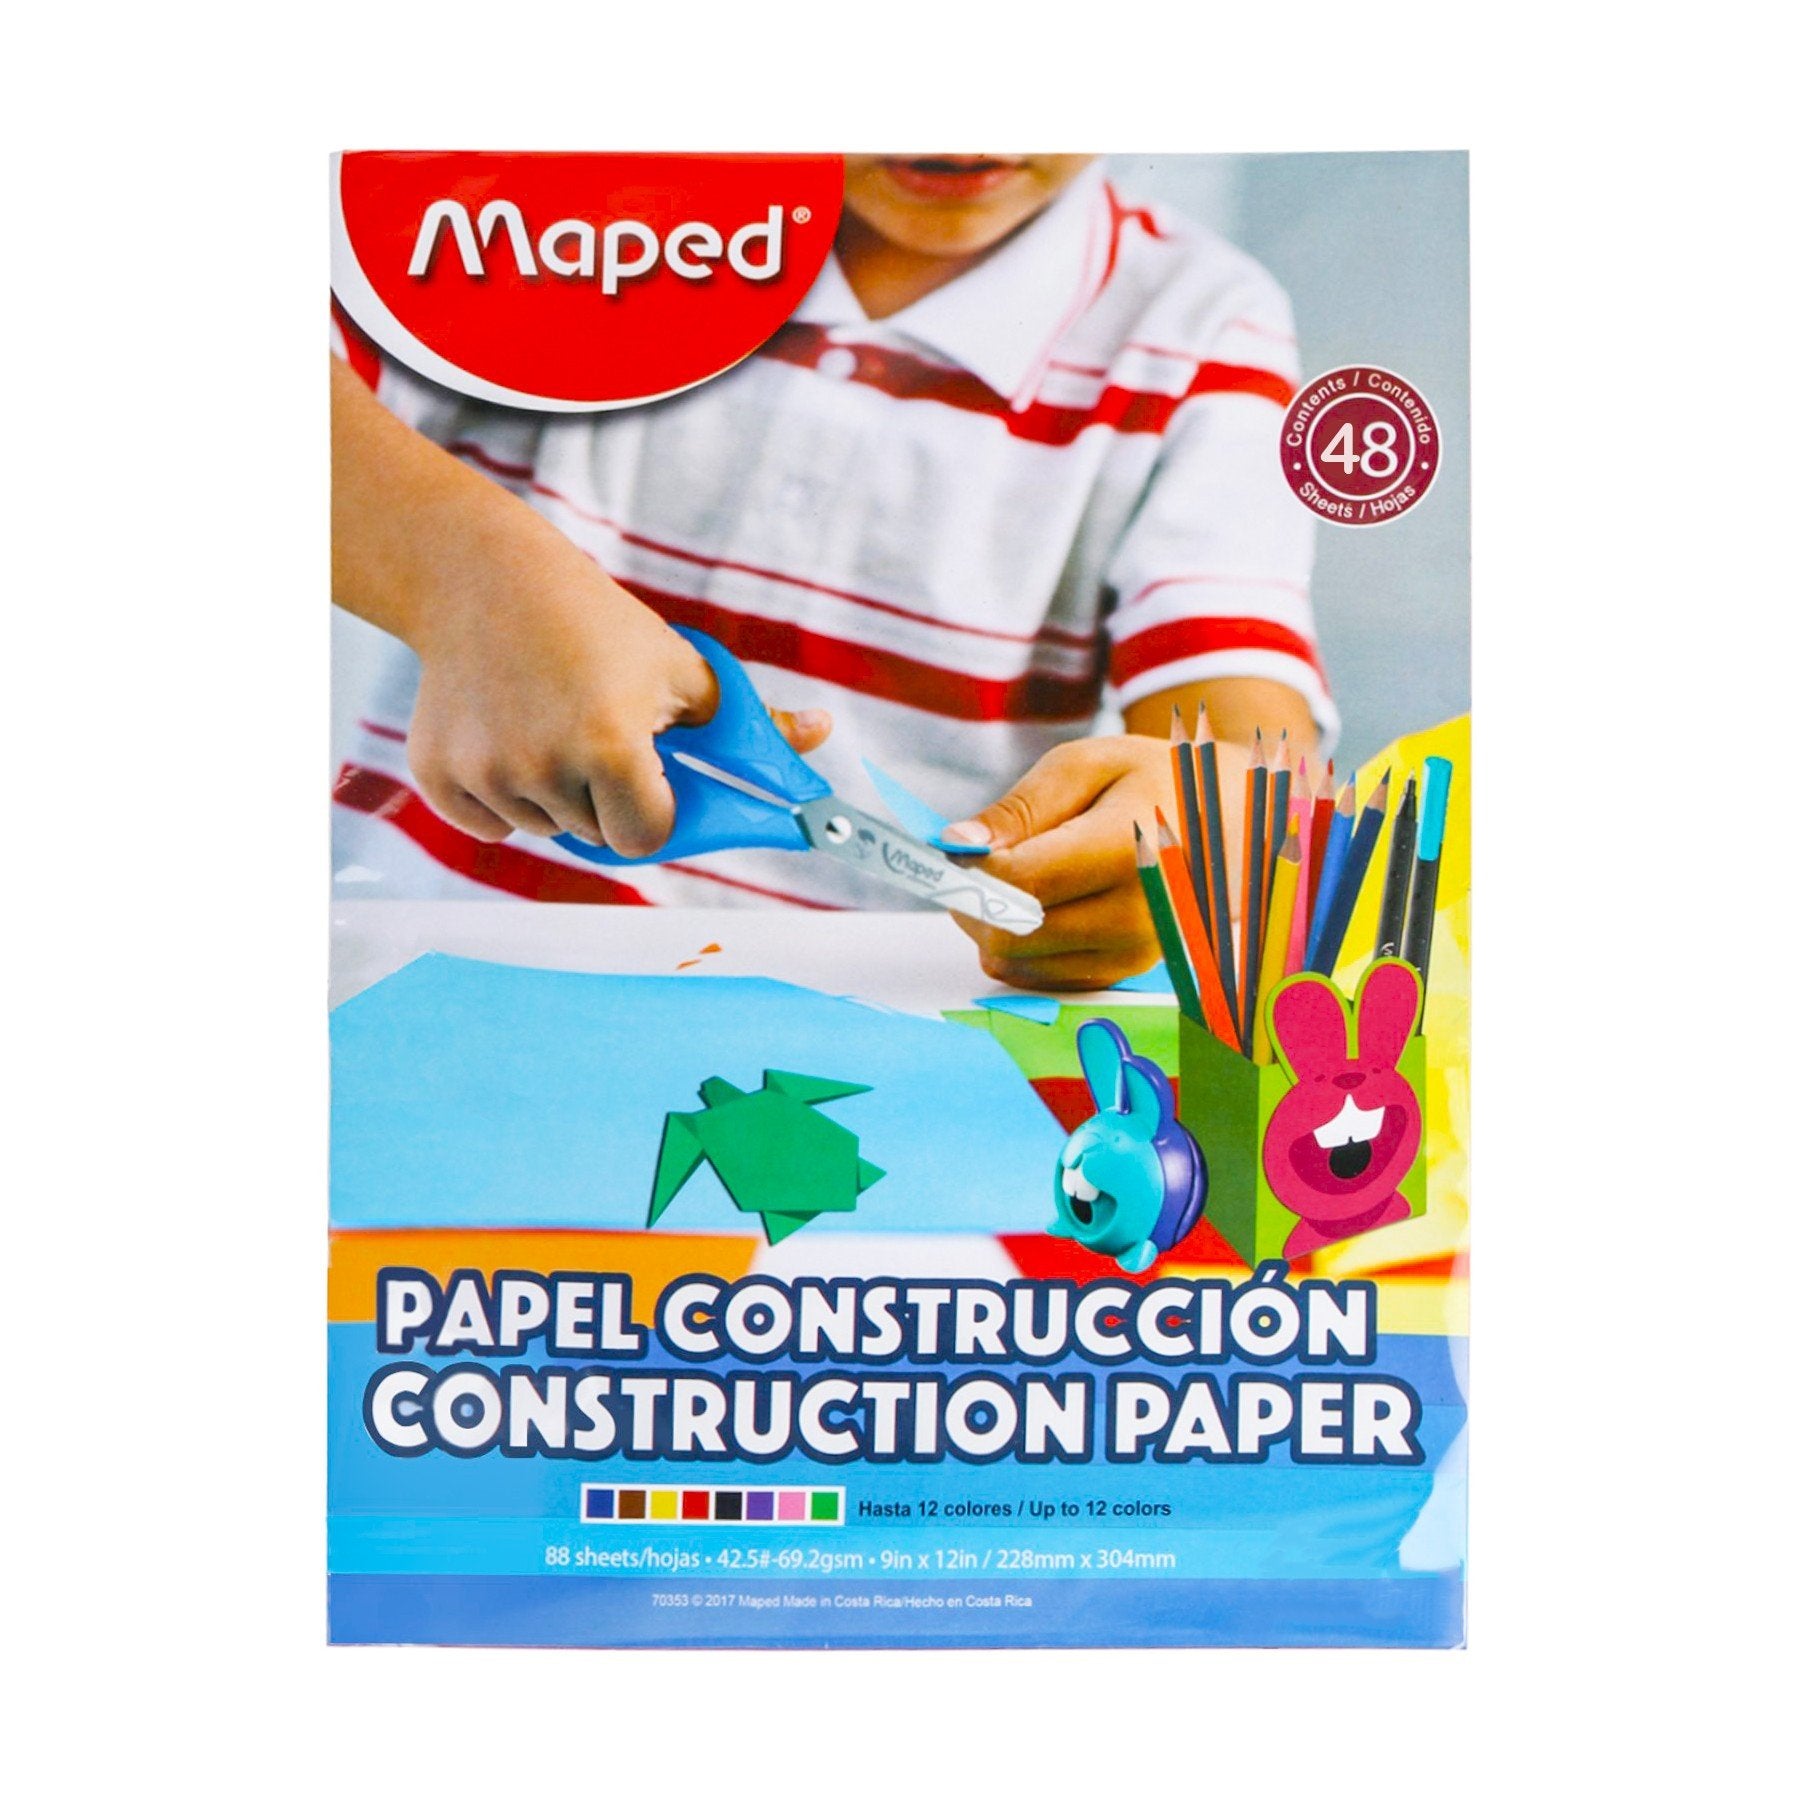 Papel de Construcción (Construction Paper) de colores surtidos.  Ideal para manualidades infantiles.  11 colores surtidos  Tamaño: 9″ x 12″ (228mmx304mm), 69.2gsms